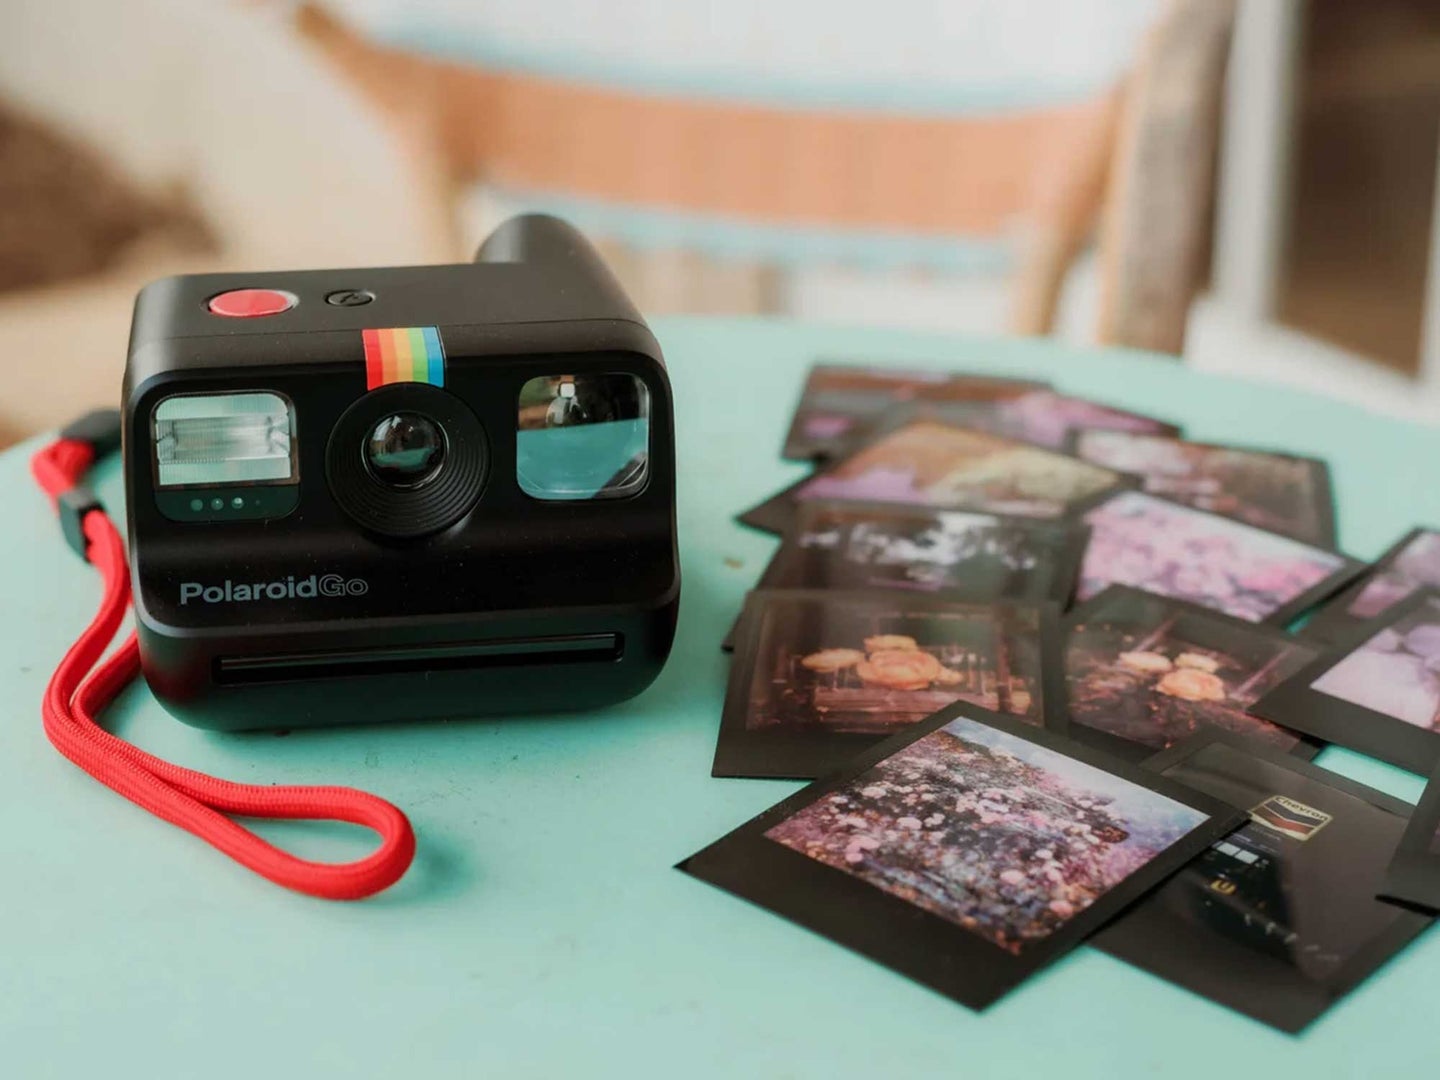 Polaroid's new camera